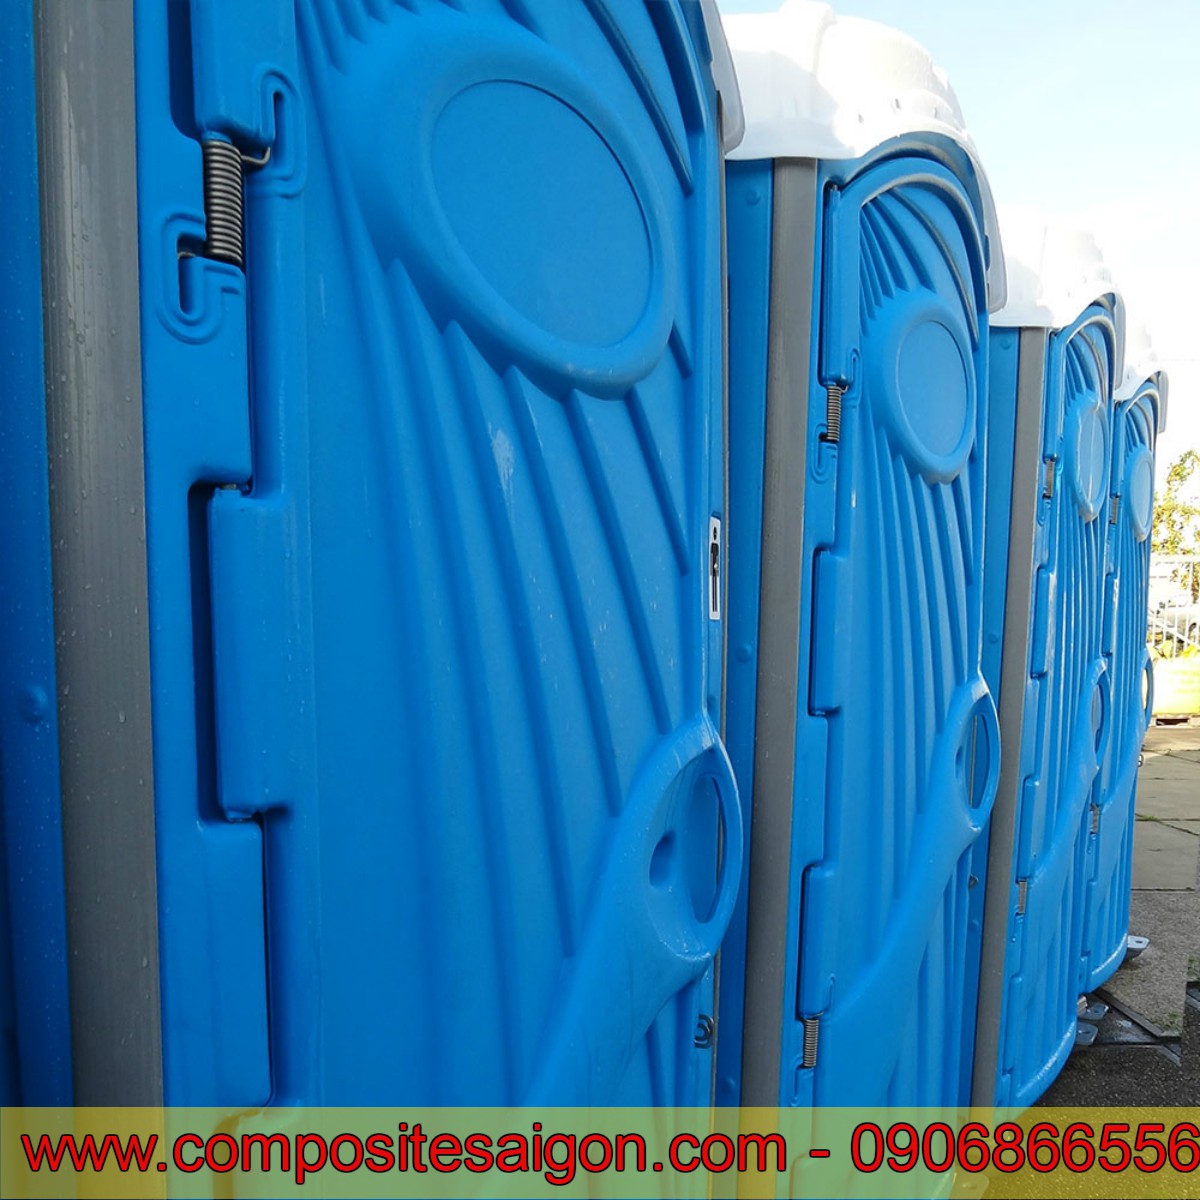 Nhà vệ sinh di động, Nhà vệ sinh composite, composite sài gòn, nhà vệ sinh, nhà vệ sinh tiện lợi, nhà vệ sinh chất liệu composite, 